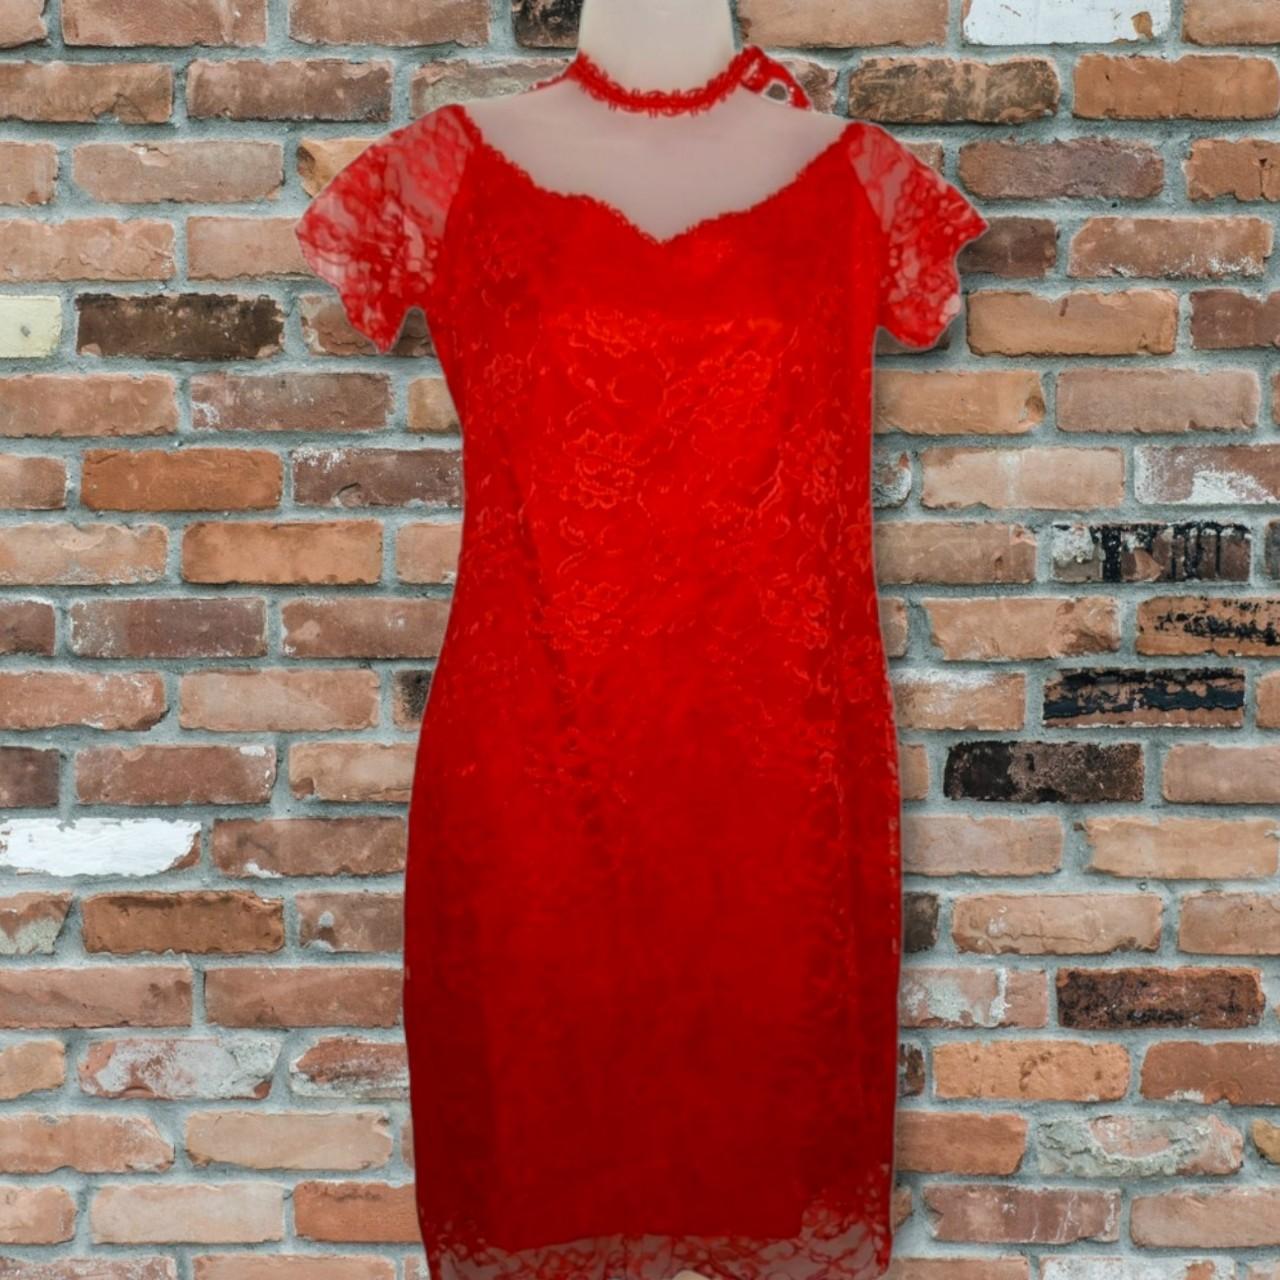 Impromptu Women's Red Dress